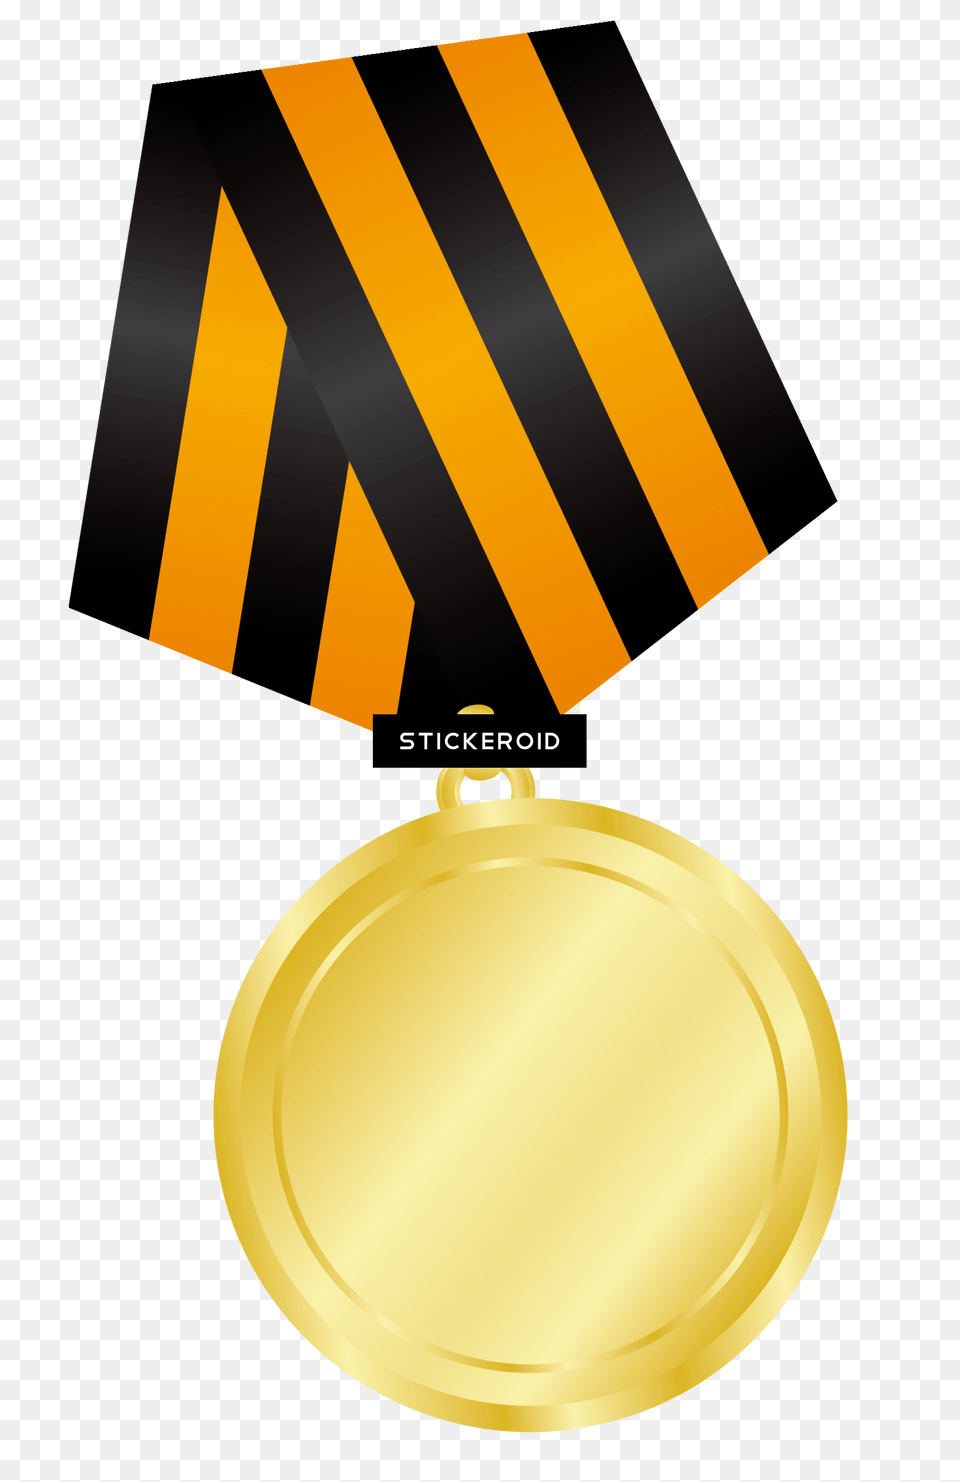 Gold Medal, Gold Medal, Trophy Png Image